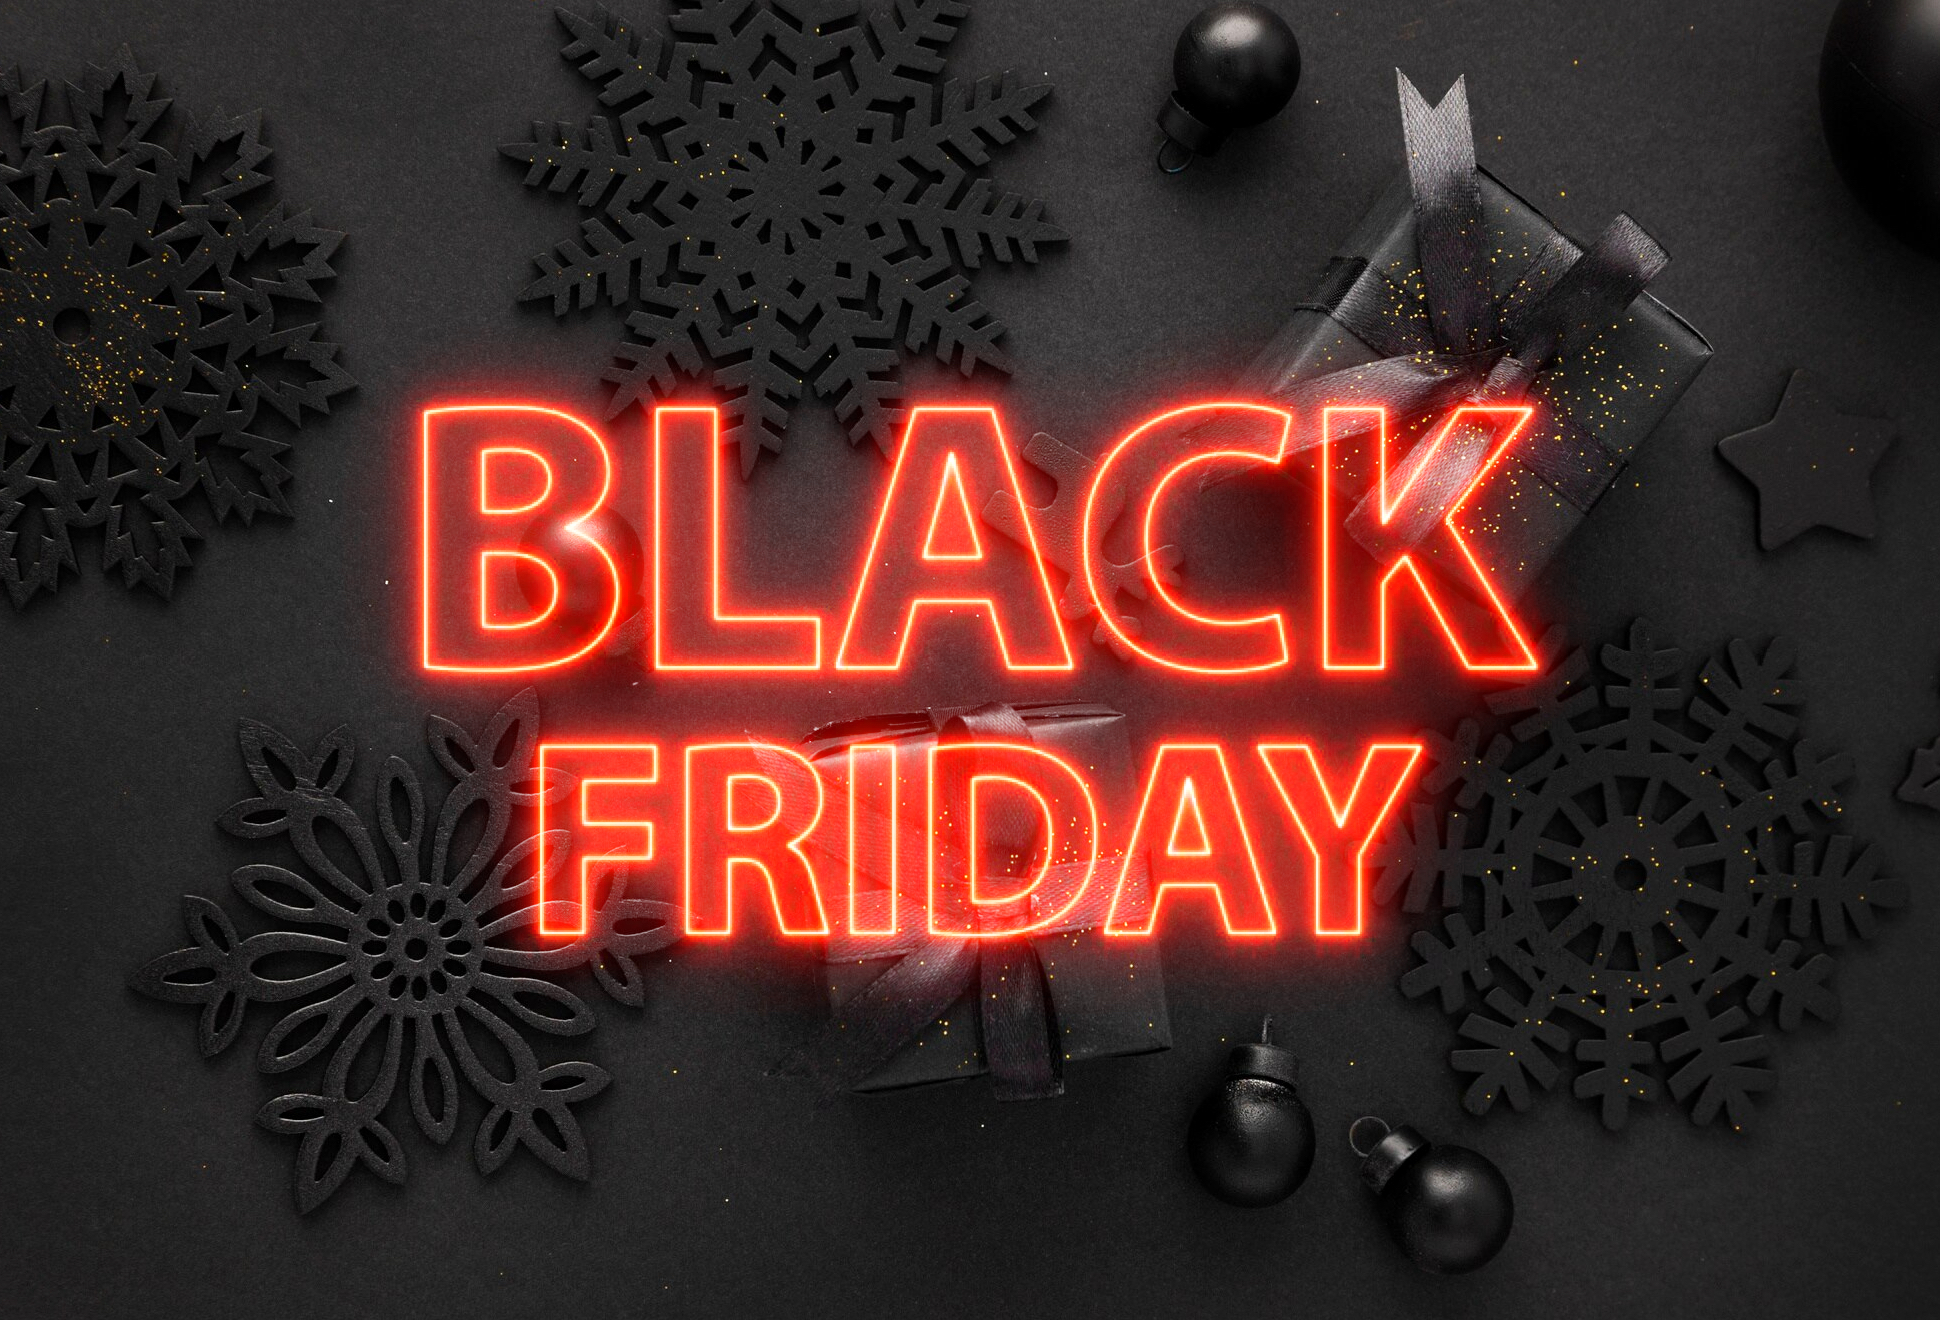 Black Friday Deals - Image